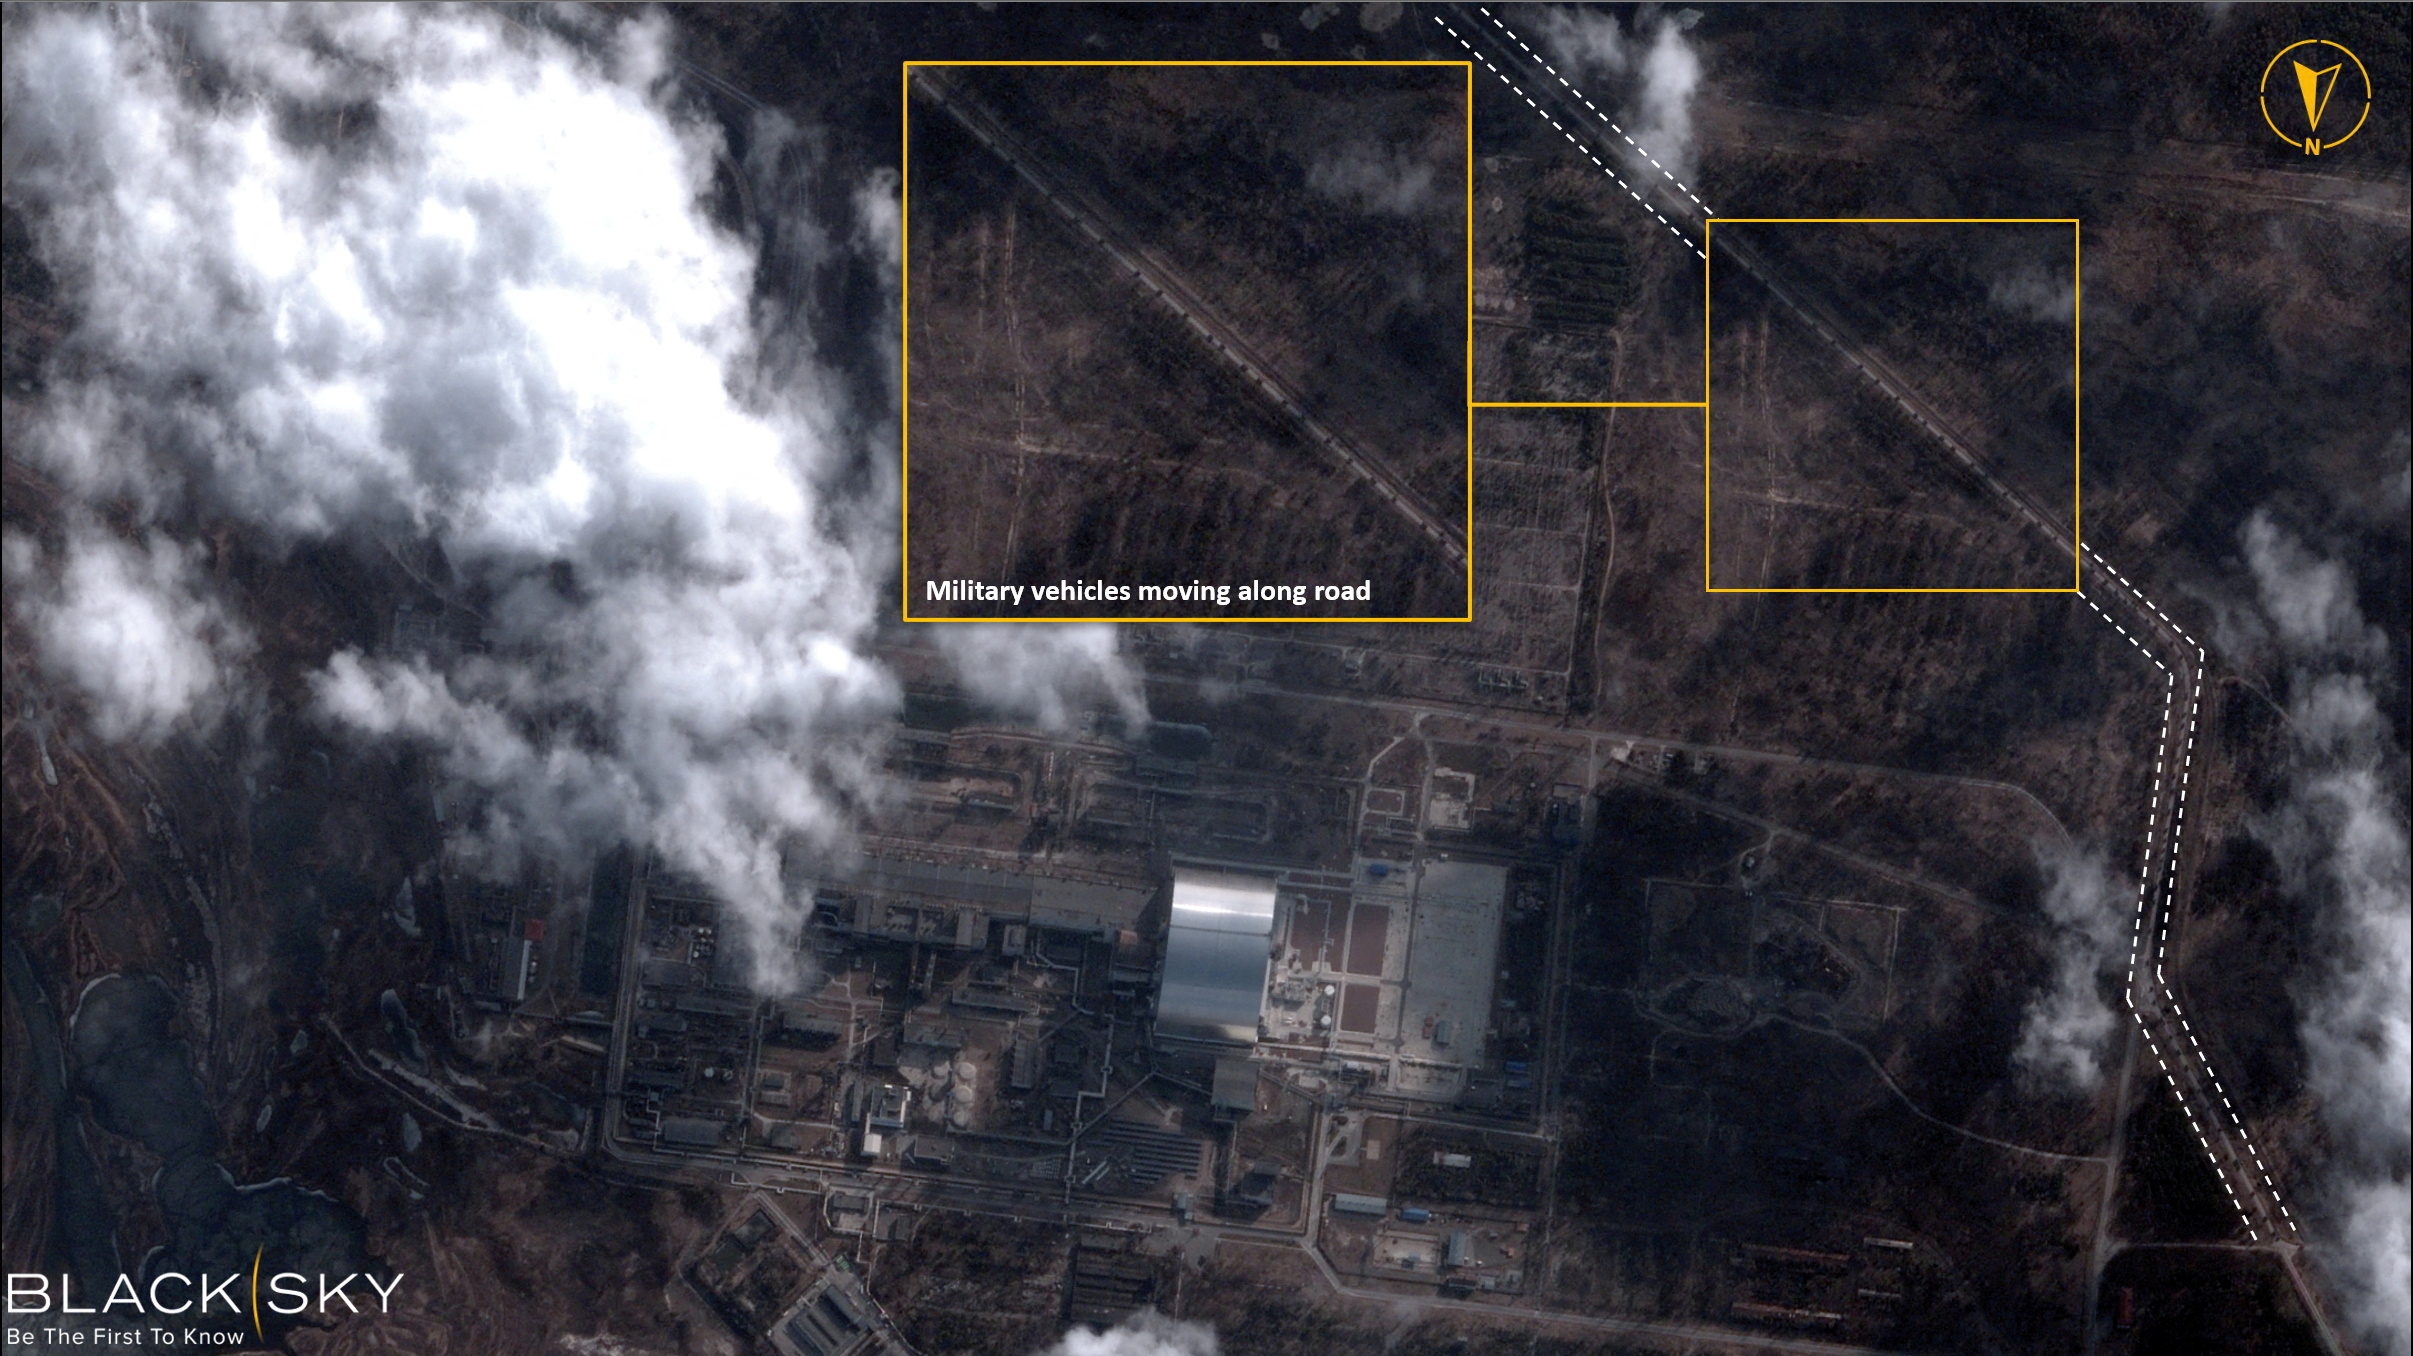 Una imagen satelital con gráficos superpuestos muestra vehículos militares junto a la planta de energía nuclear de Chernobyl, en Chernobyl, Ucrania, el 25 de febrero de 2022. (BlackSky/Folleto vía REUTERS)